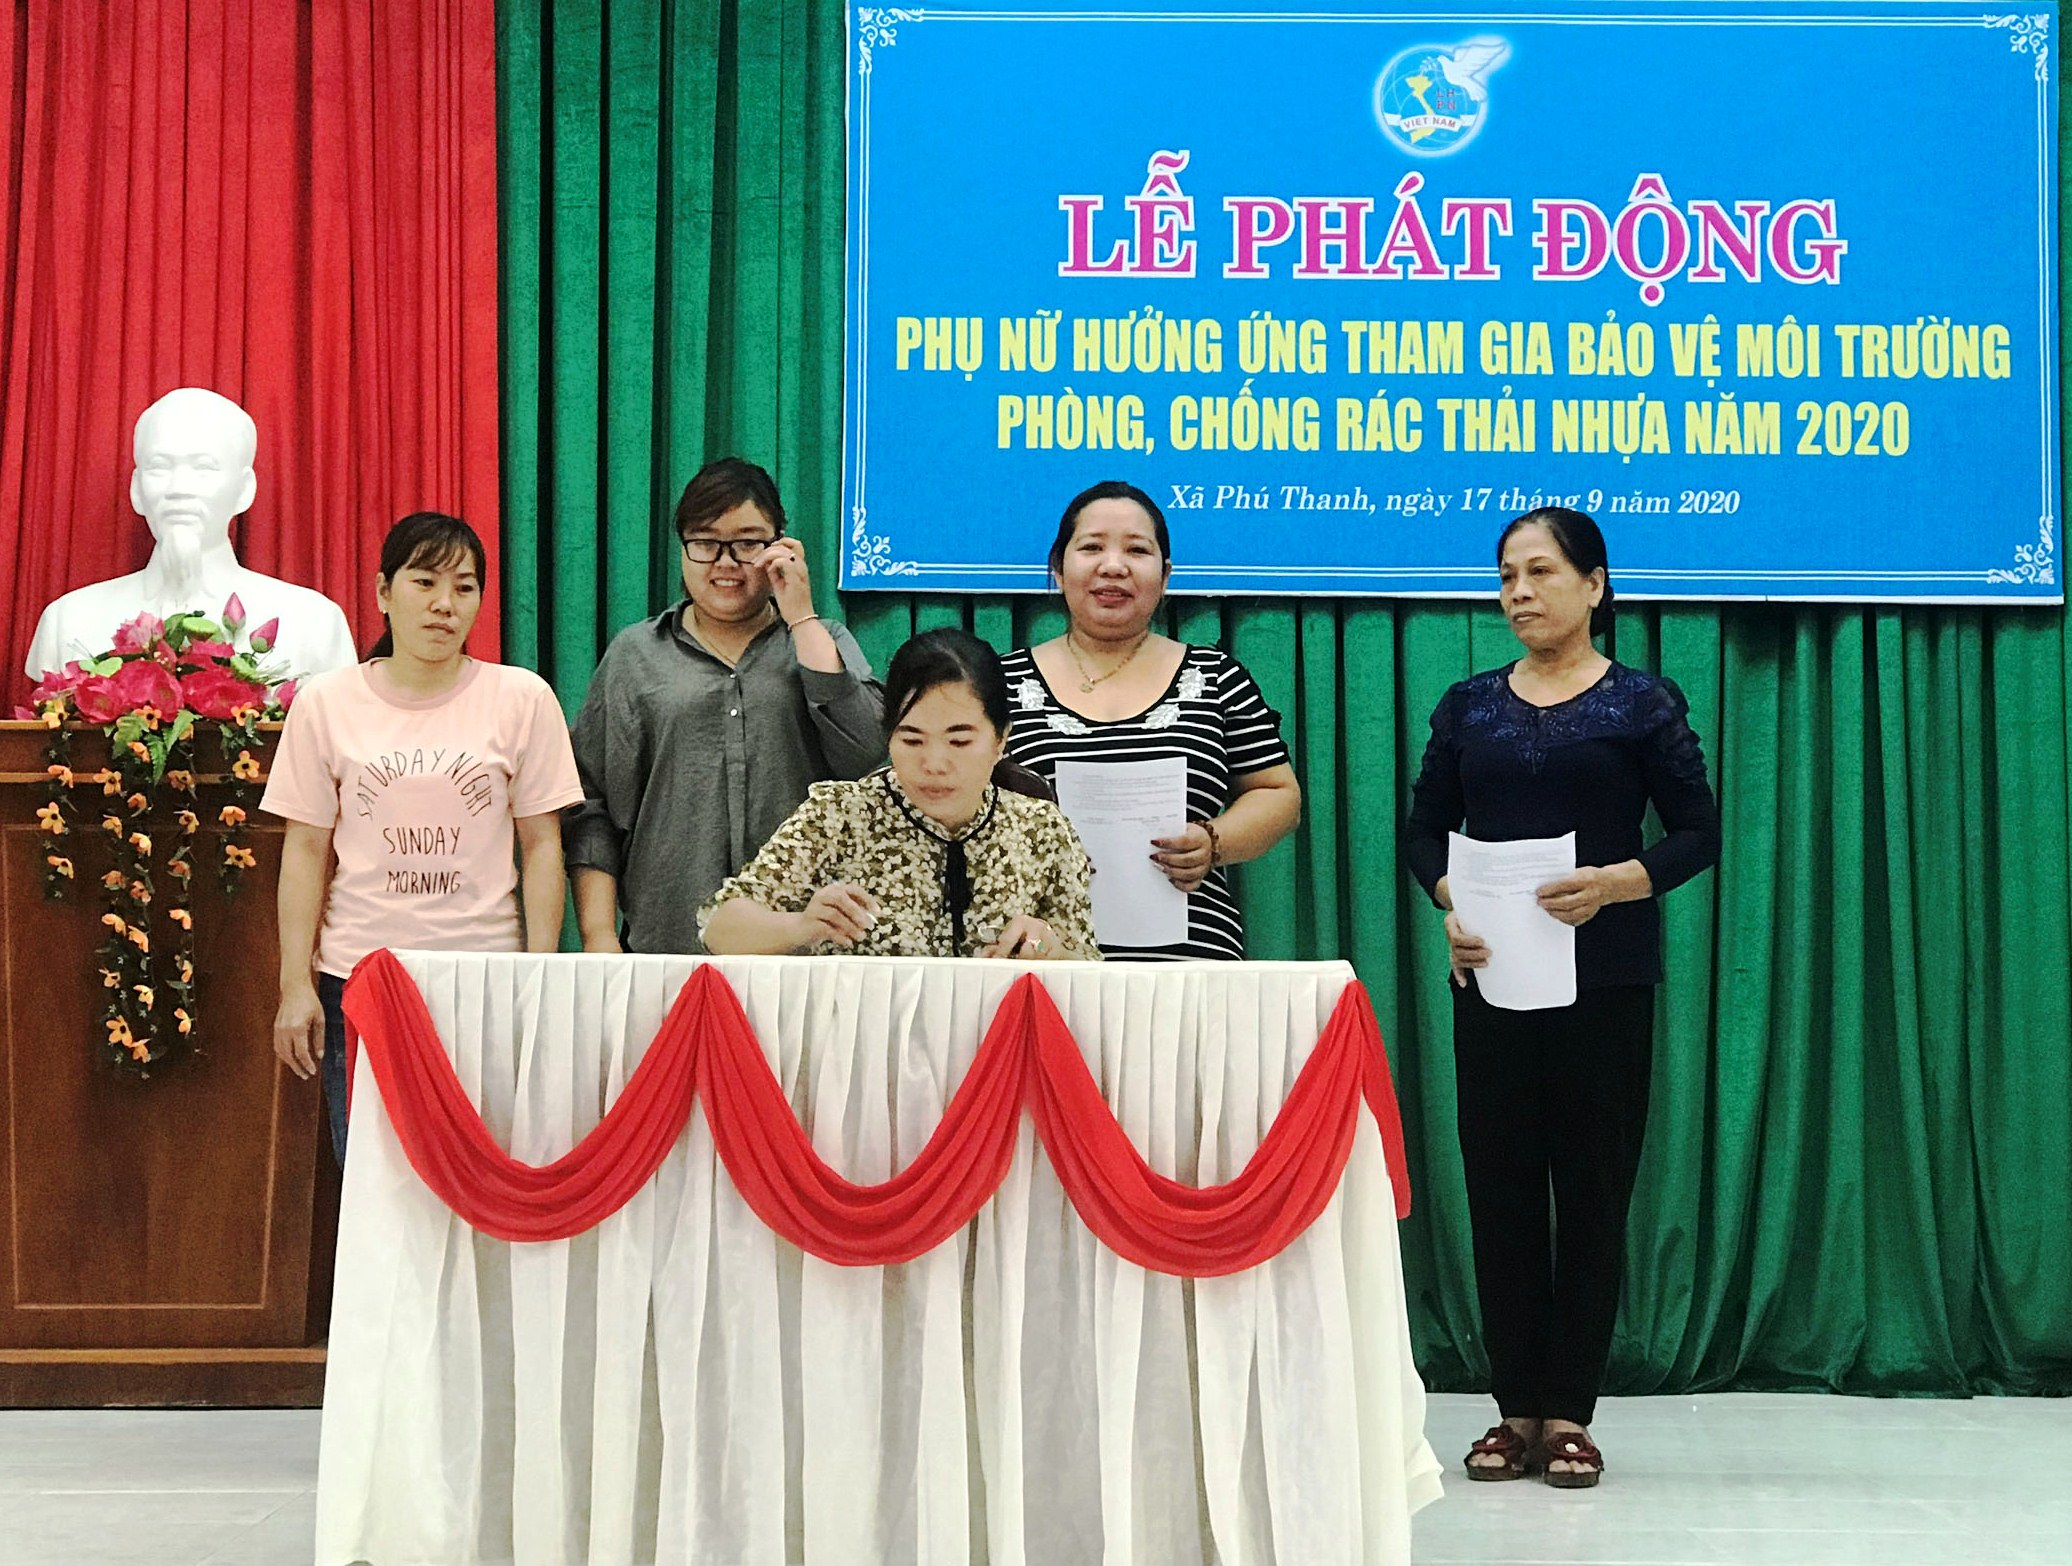 Đại diện Hội phụ nữ xã Phú Thanh ký cam kết hạn chế sử dụng túi nilon và thực hiện phân loại chất thải rắn tại nguồn.jpg